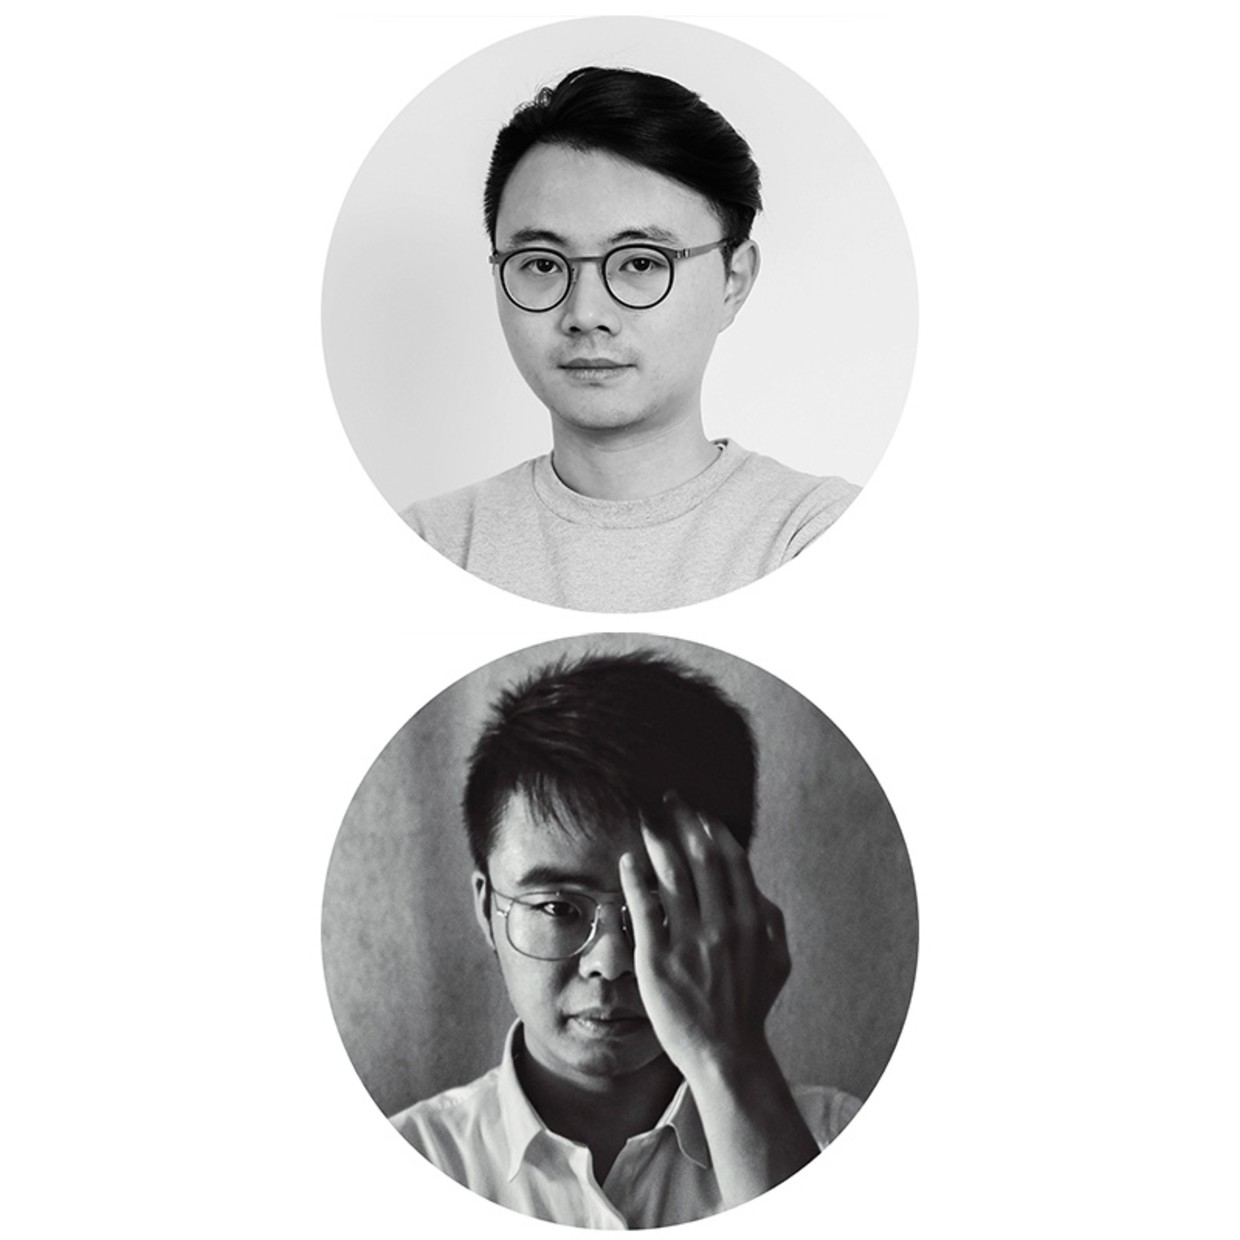 策展团队：印帅&张艺川 印帅（1991）是一位中国策展人，工作生活于米兰与上海。 张艺川，策展人、出版人、导演，工作生活于北京，AP Project发起人。